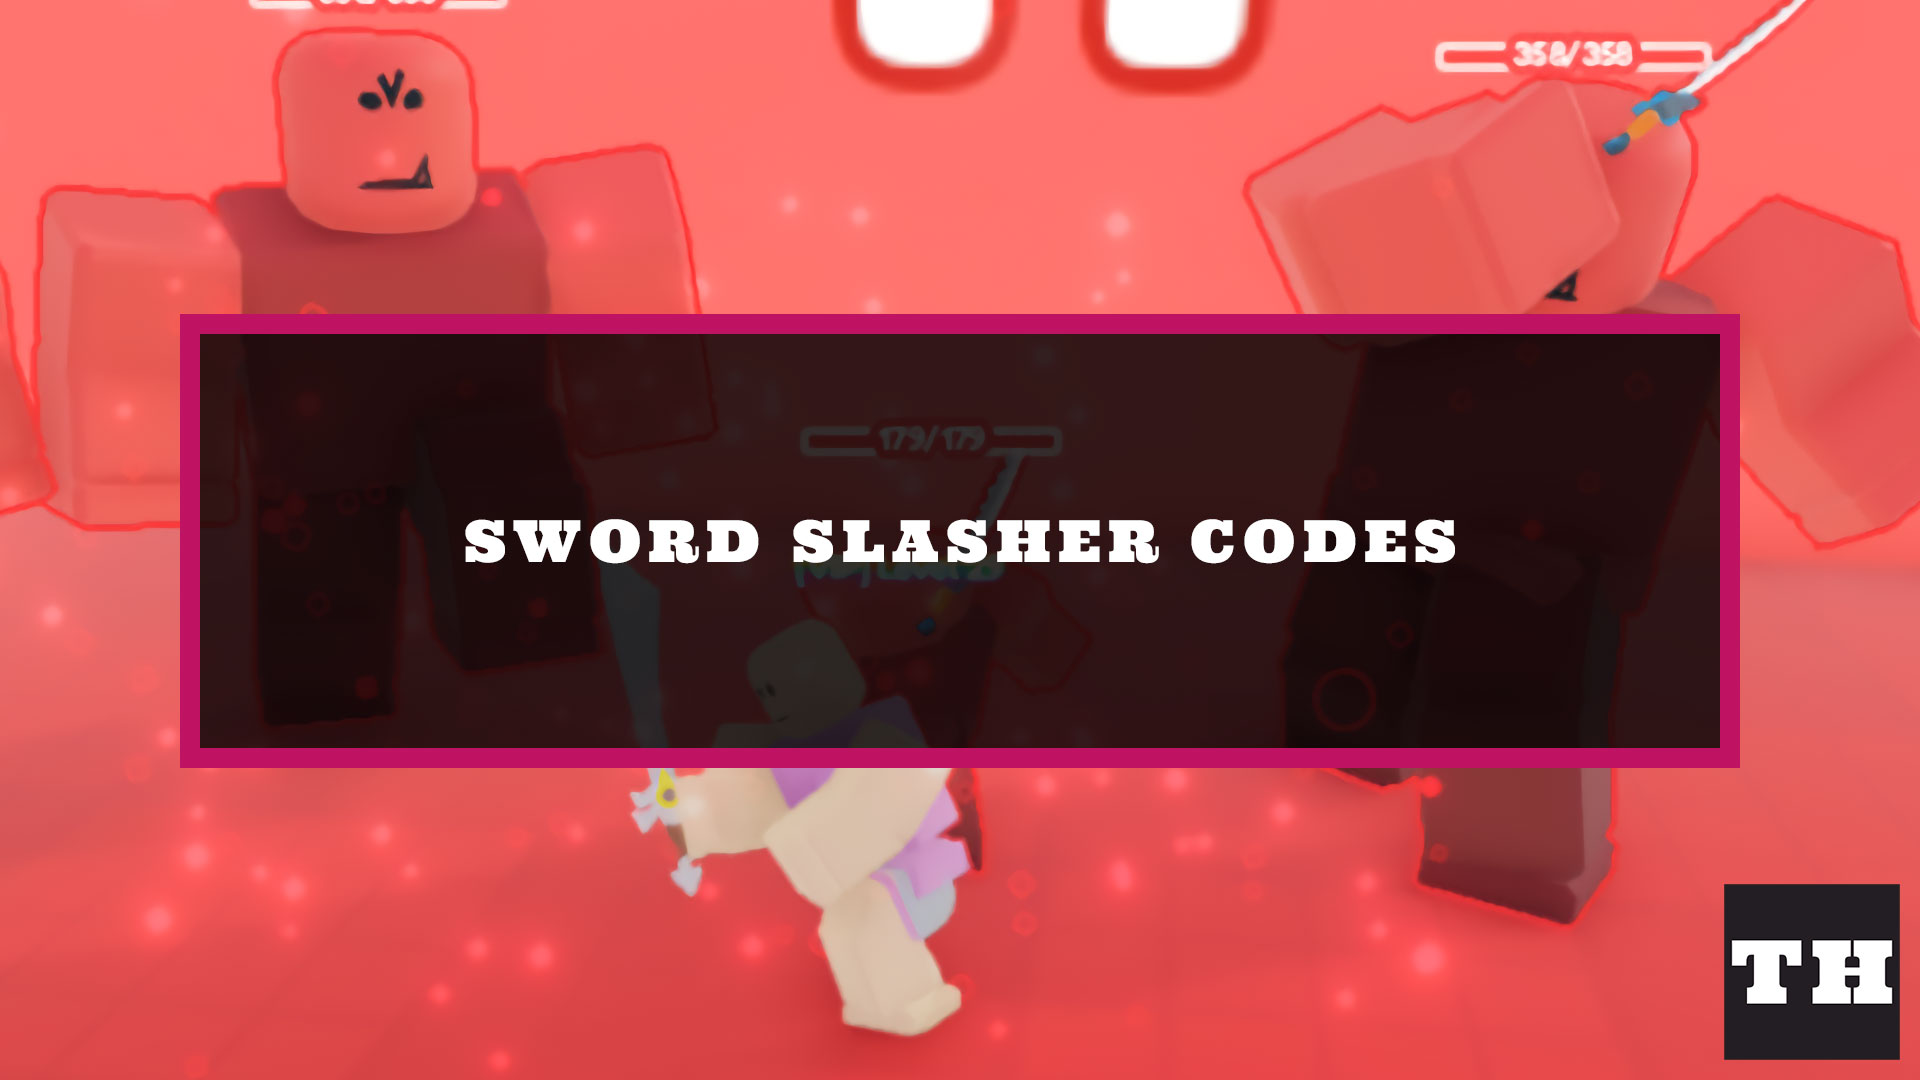 Sword roblox codes